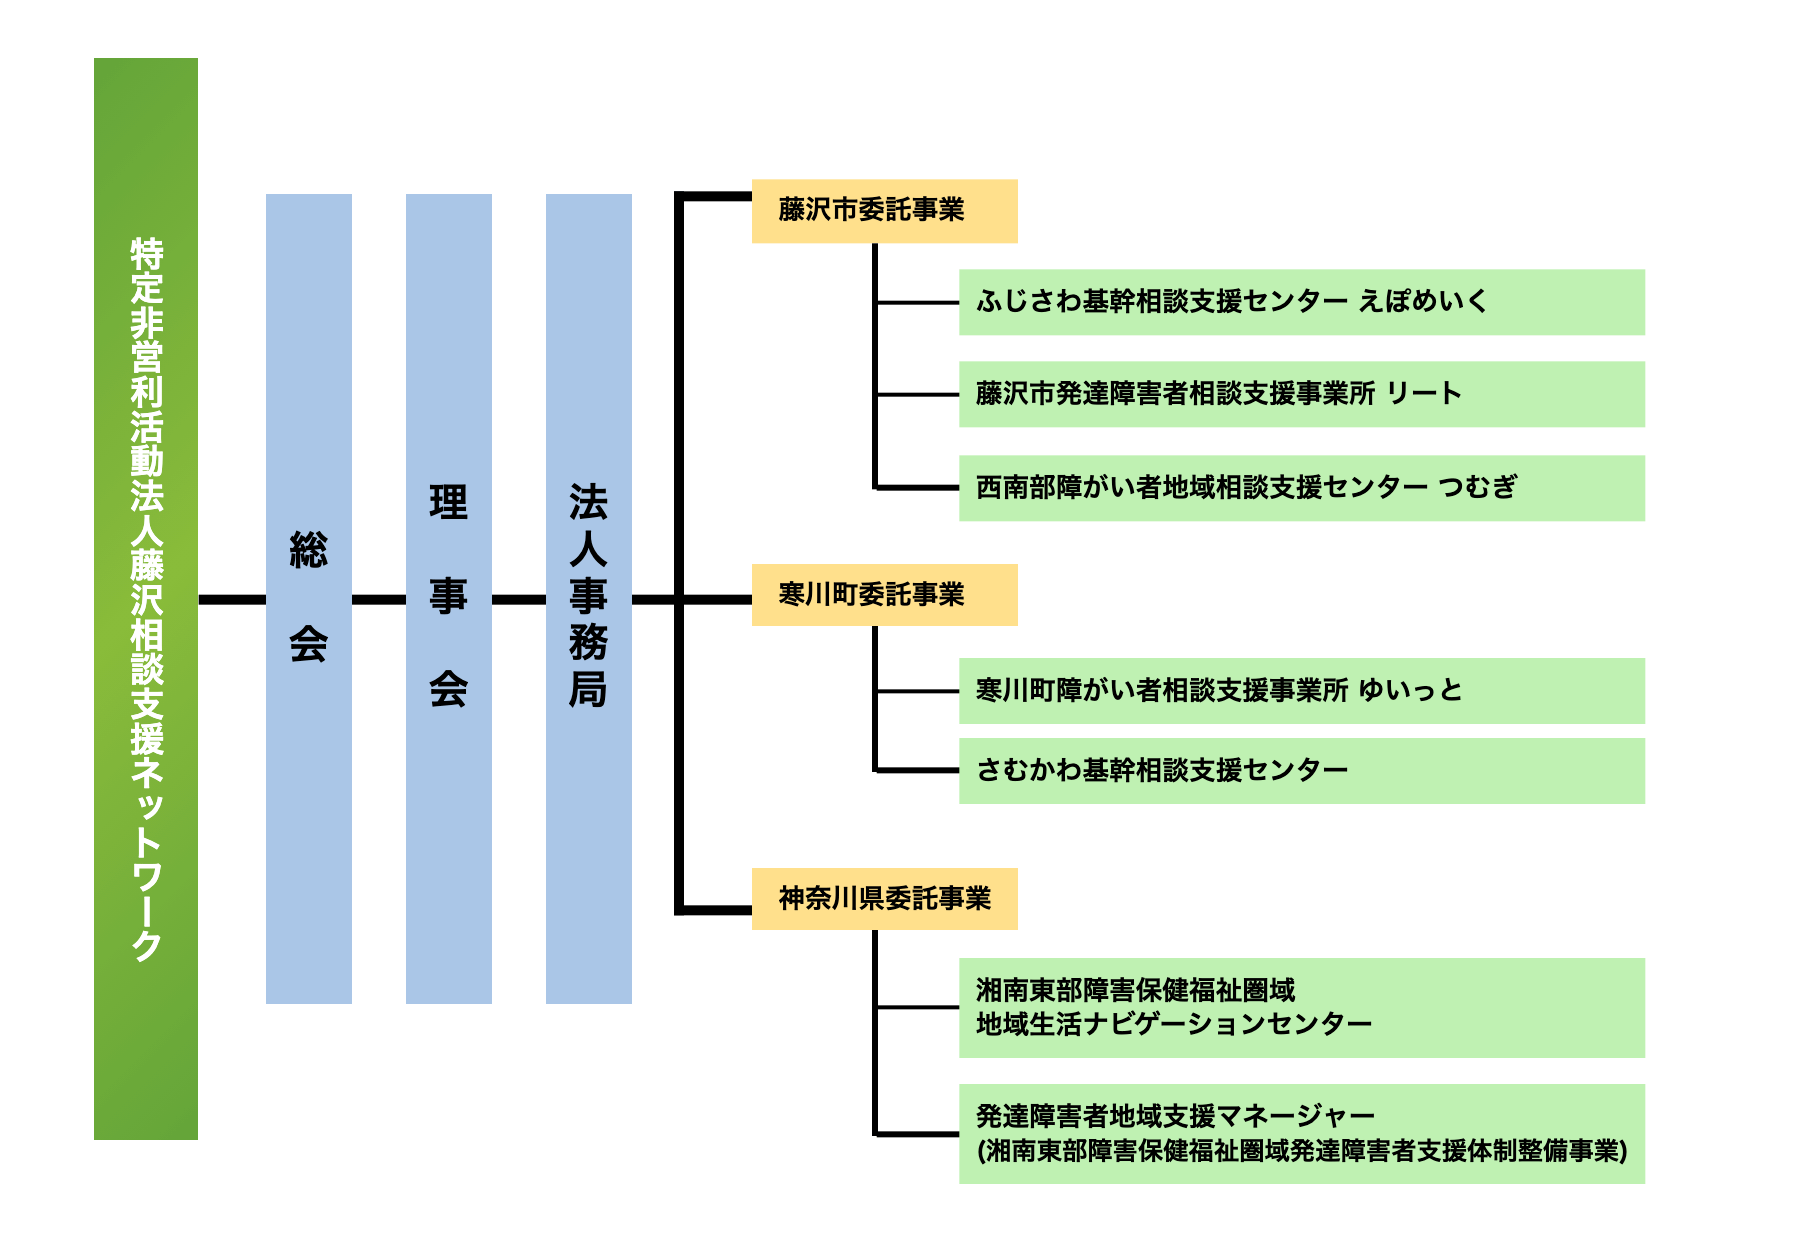 藤沢相談支援ネットワークの組織図